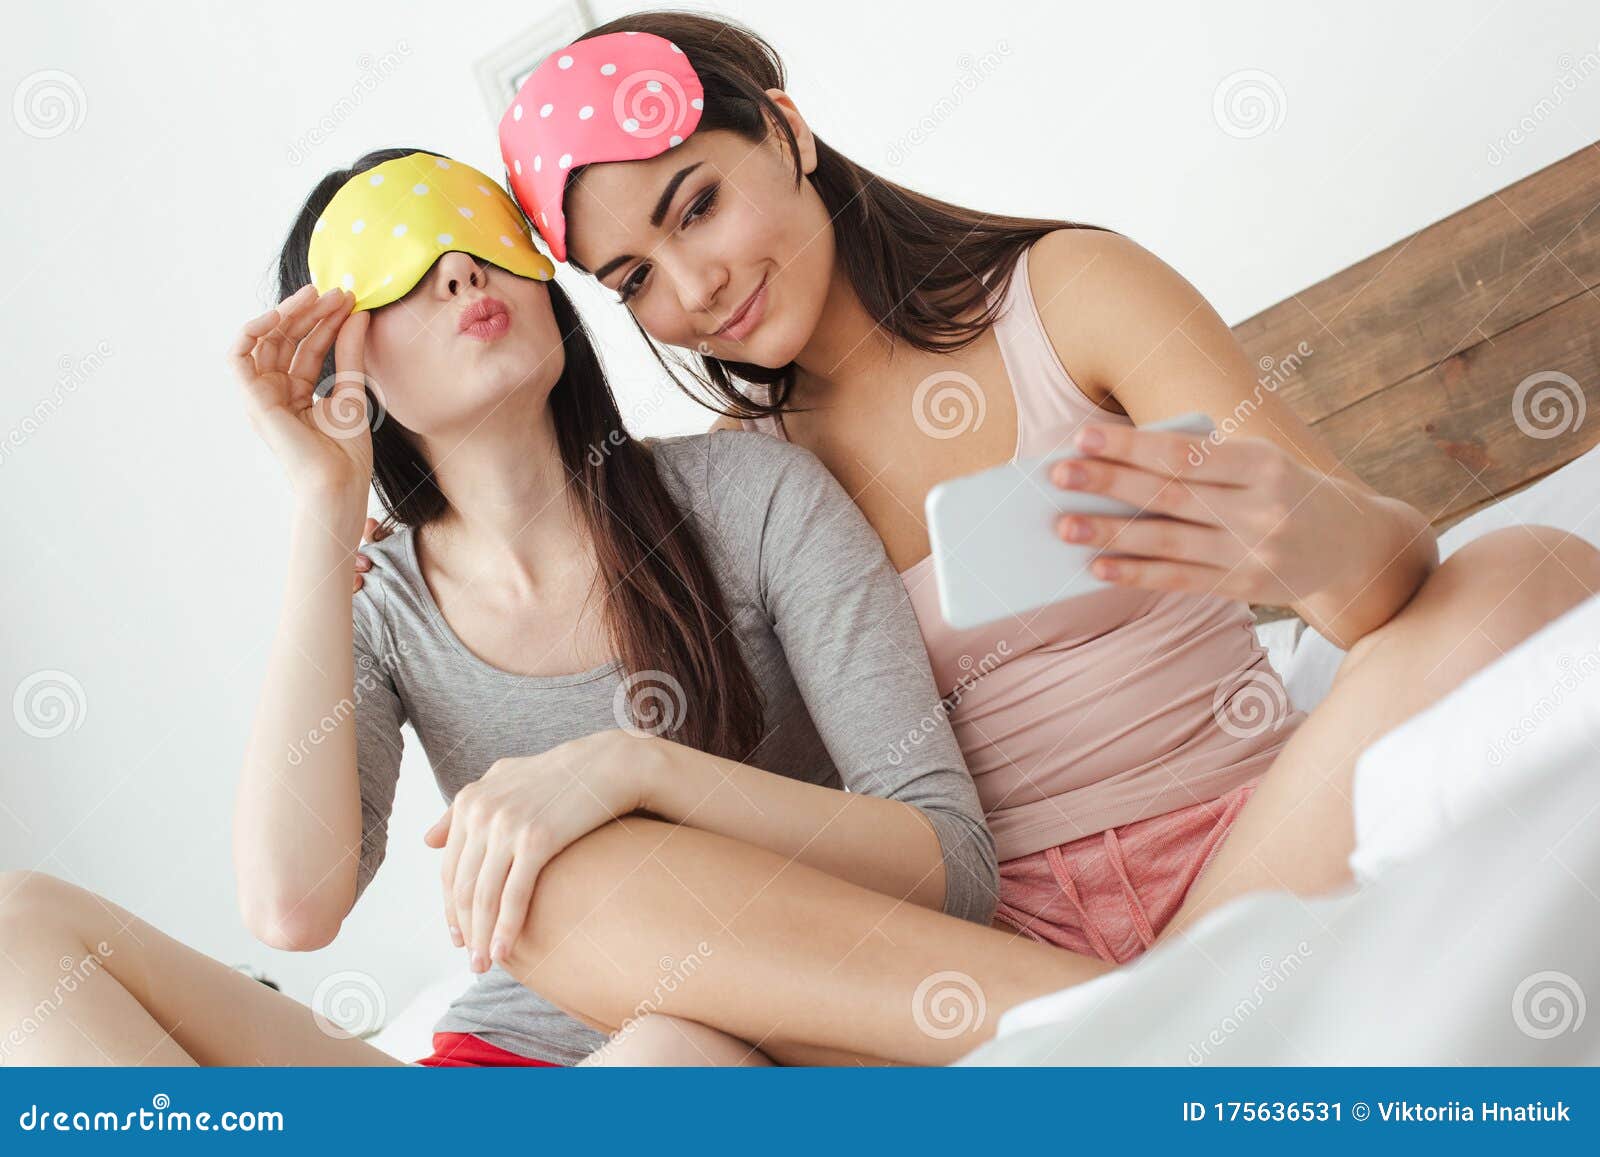 lesbian bed selfie